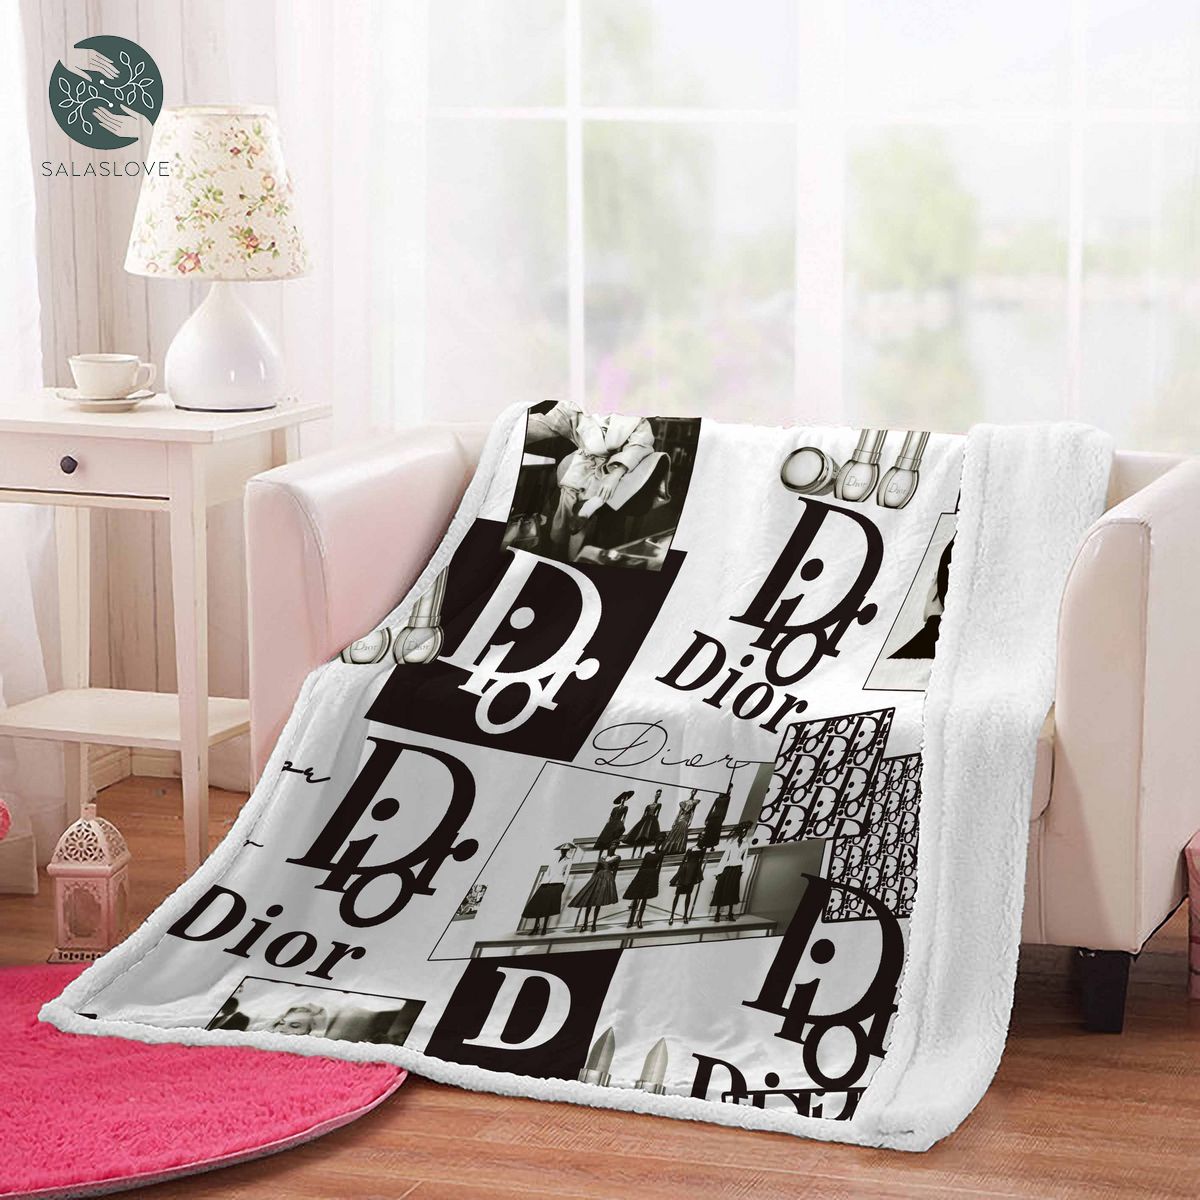 Luxruy Dior Bedding Bedroom Blanket